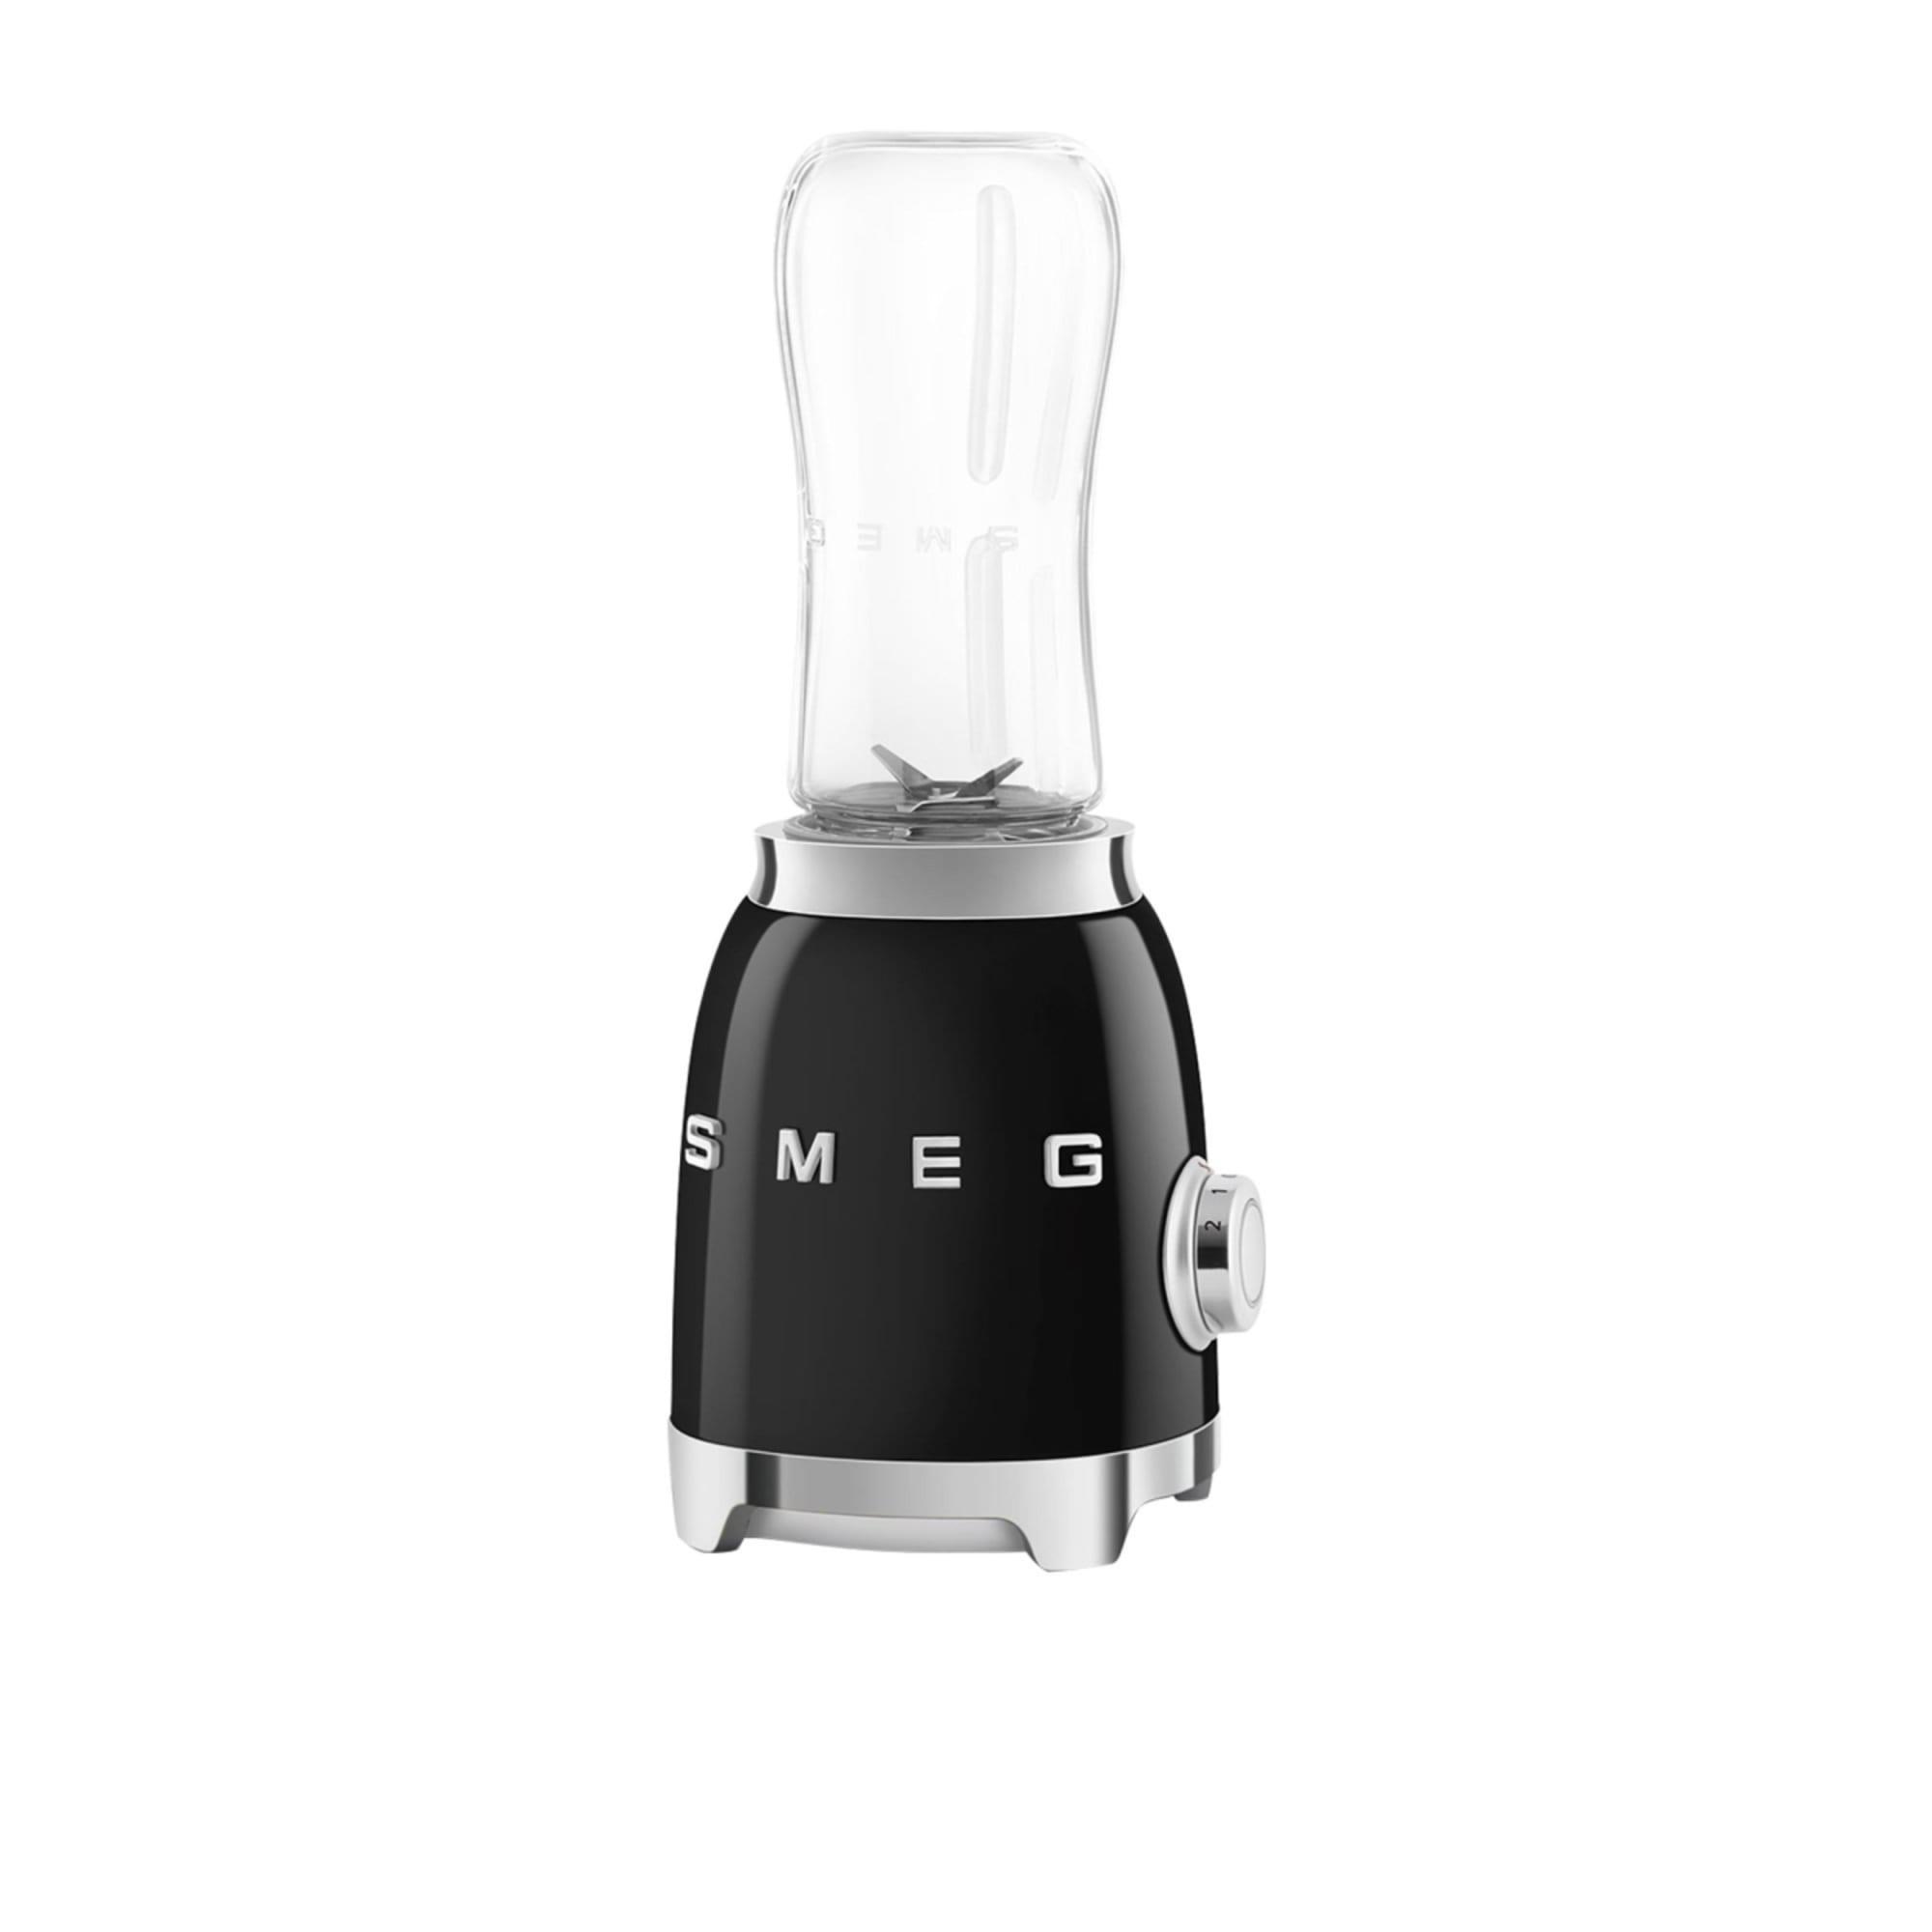 Smeg 50's Retro Style Mini Blender Black Image 3